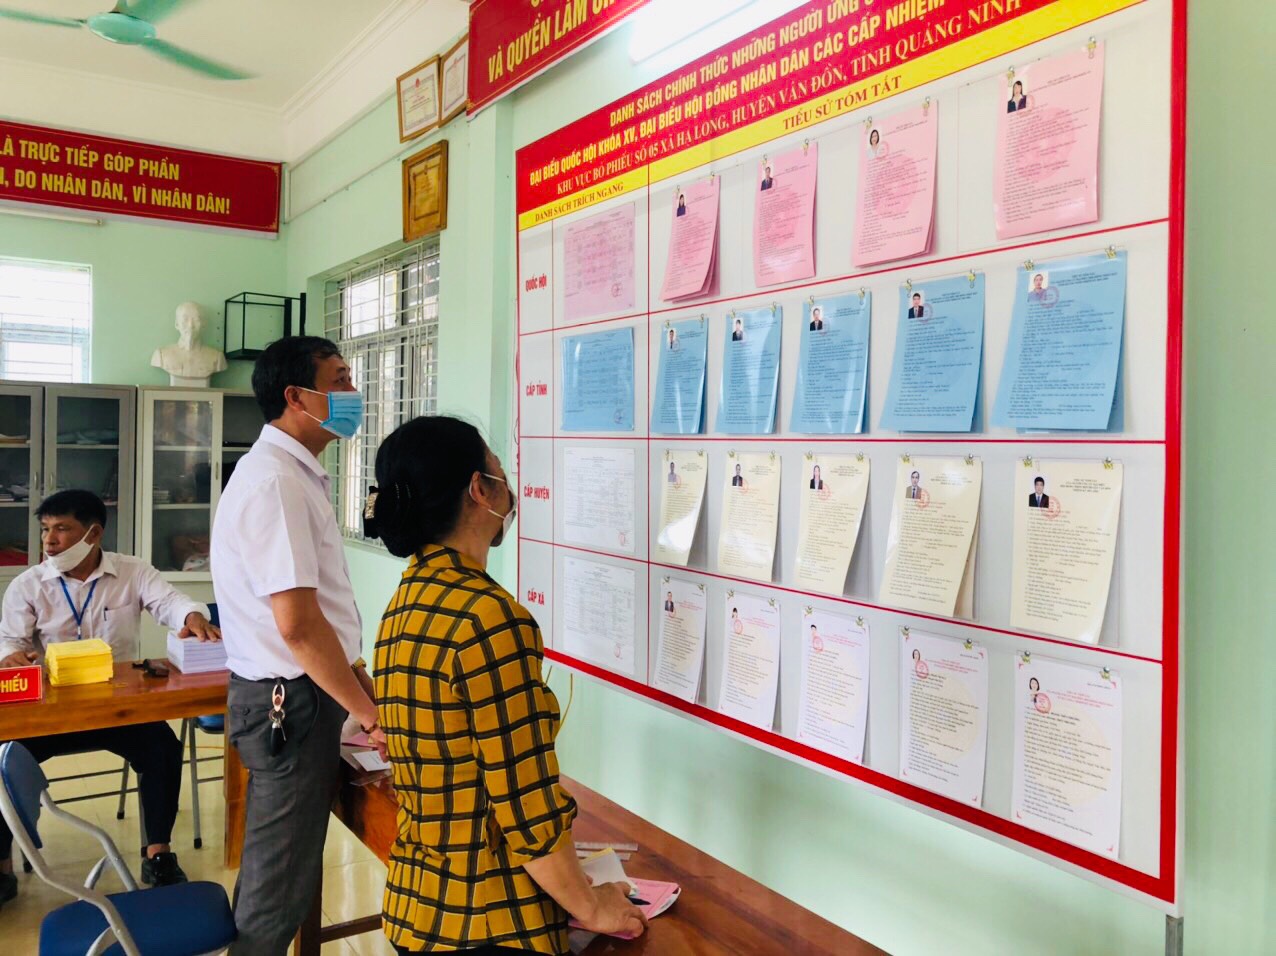 Quảng Ninh chuyển cả hòm phiếu lưu động tới giường bệnh cho bệnh nhân bỏ phiếu - Ảnh 12.